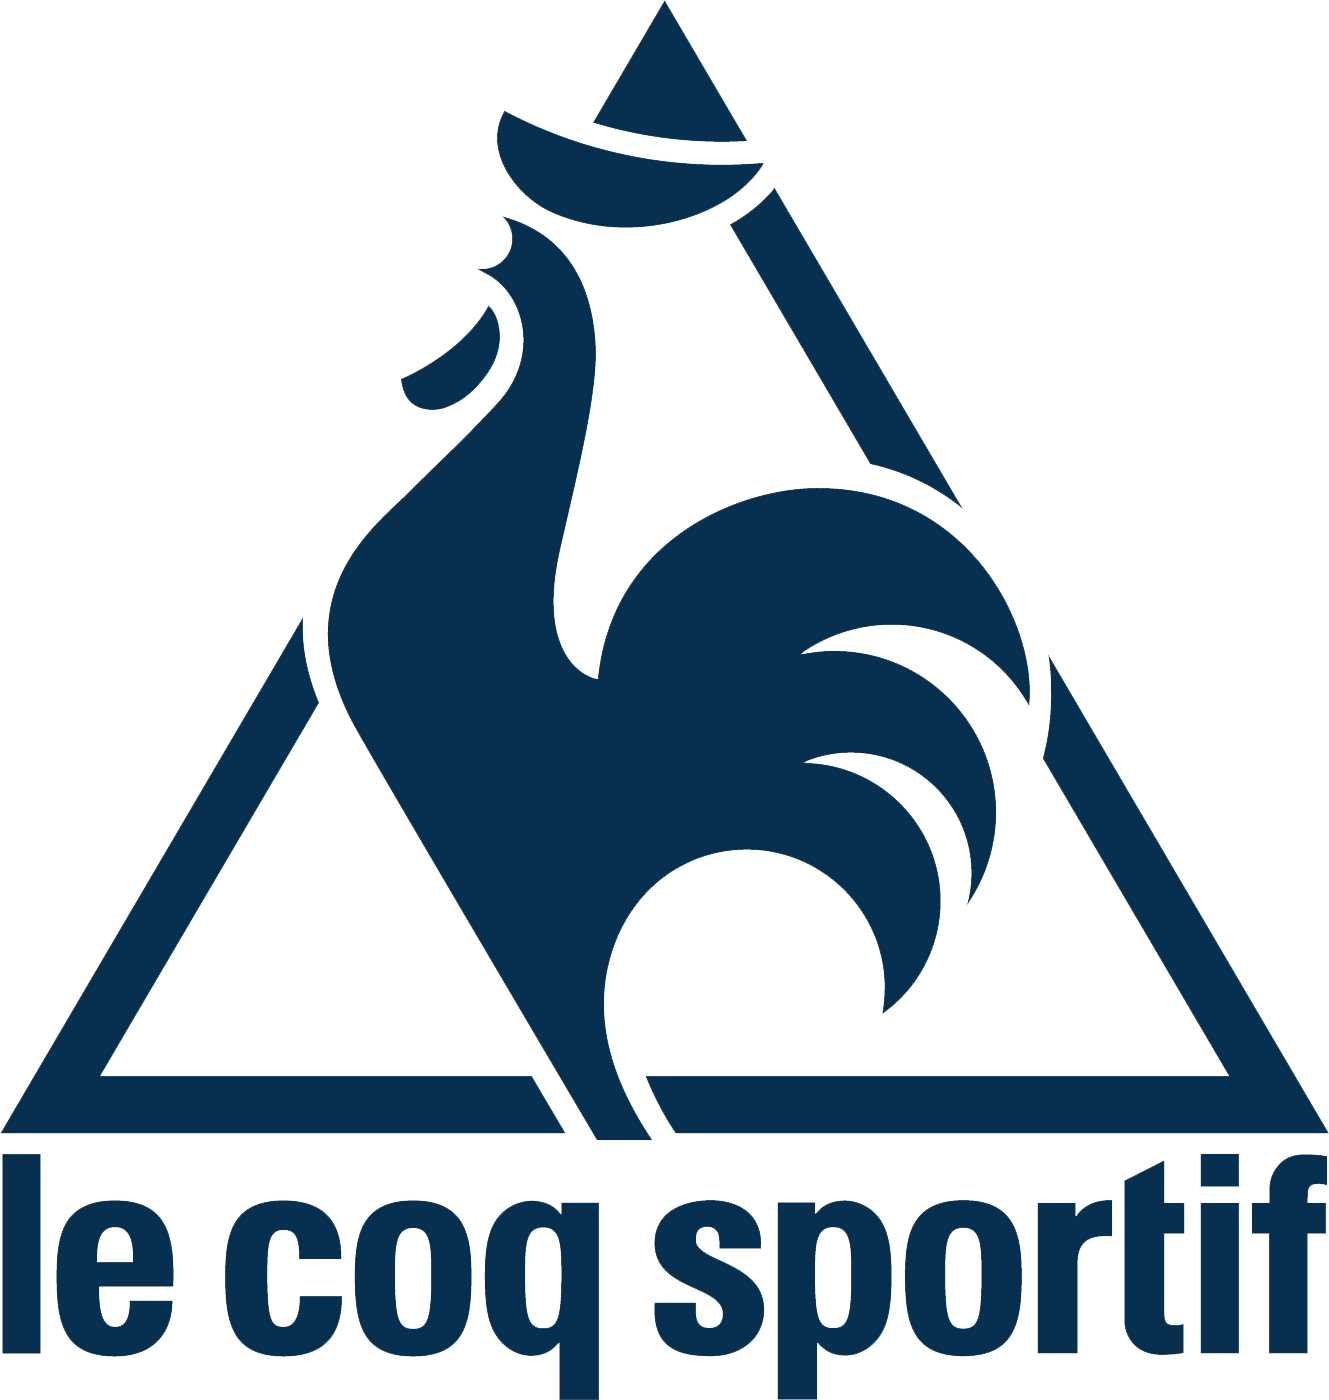 Le coq sportif est un équipementier français de vêtements et de